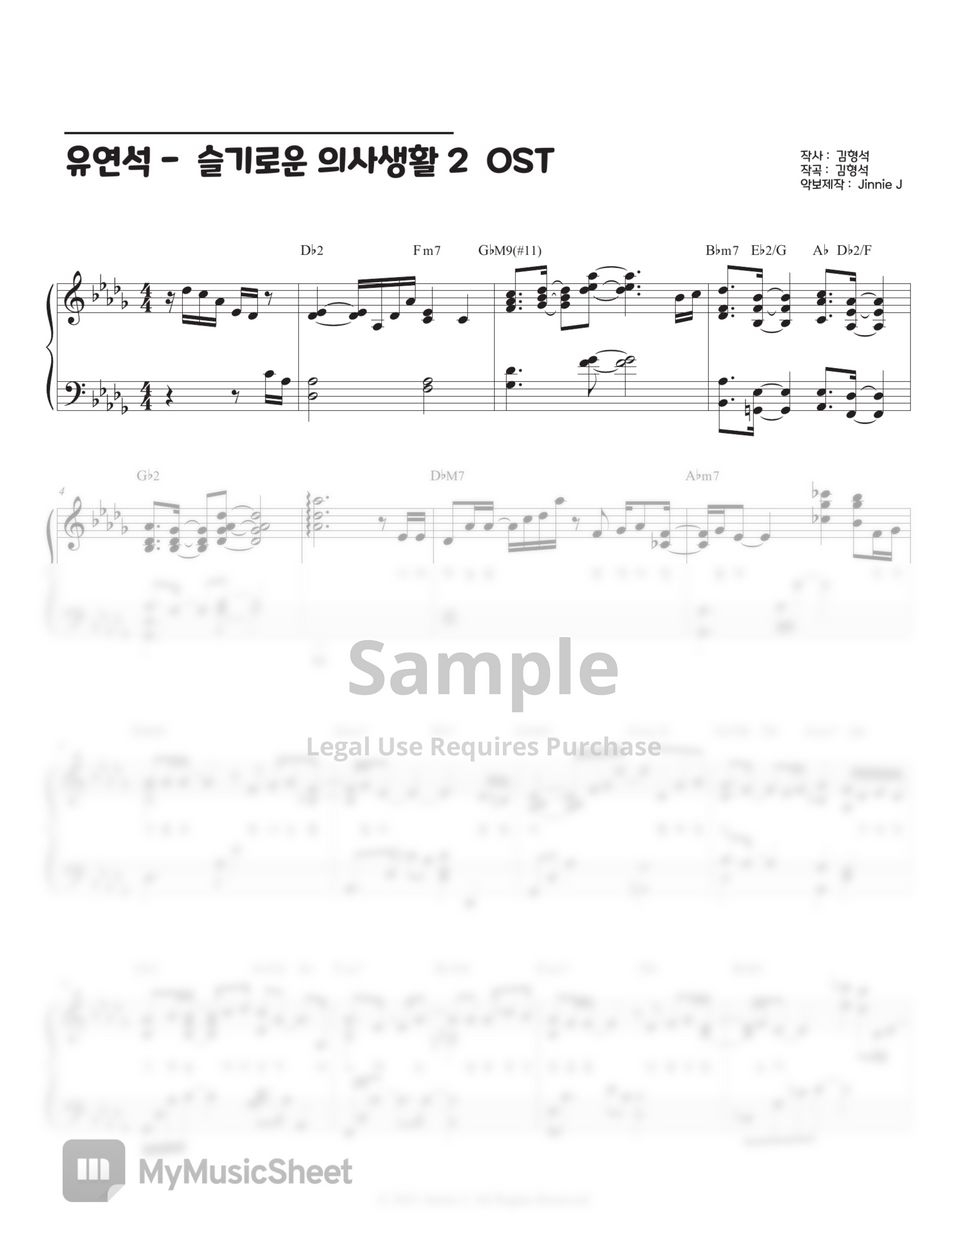 유연석 (Yoo Yeon Seok) - 너에게 (To You) (Hospital Playlist 2 OST) by Jinnie J